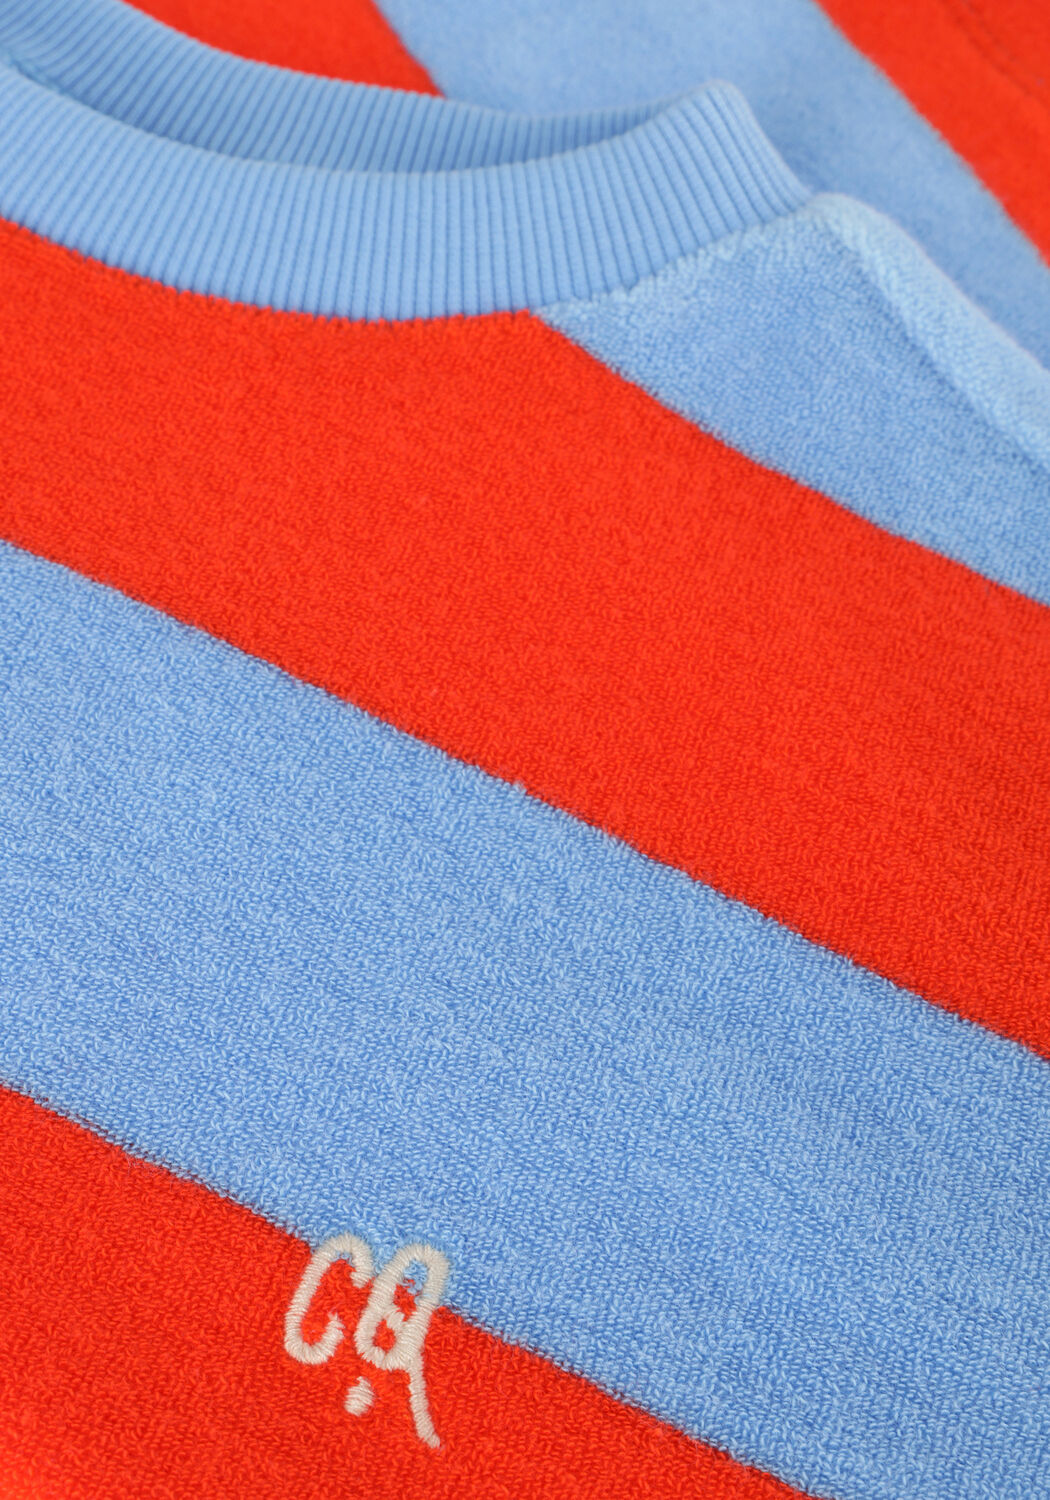 CARLIJNQ Jongens Broeken Striped Red blue T-shirt Oversized Rood